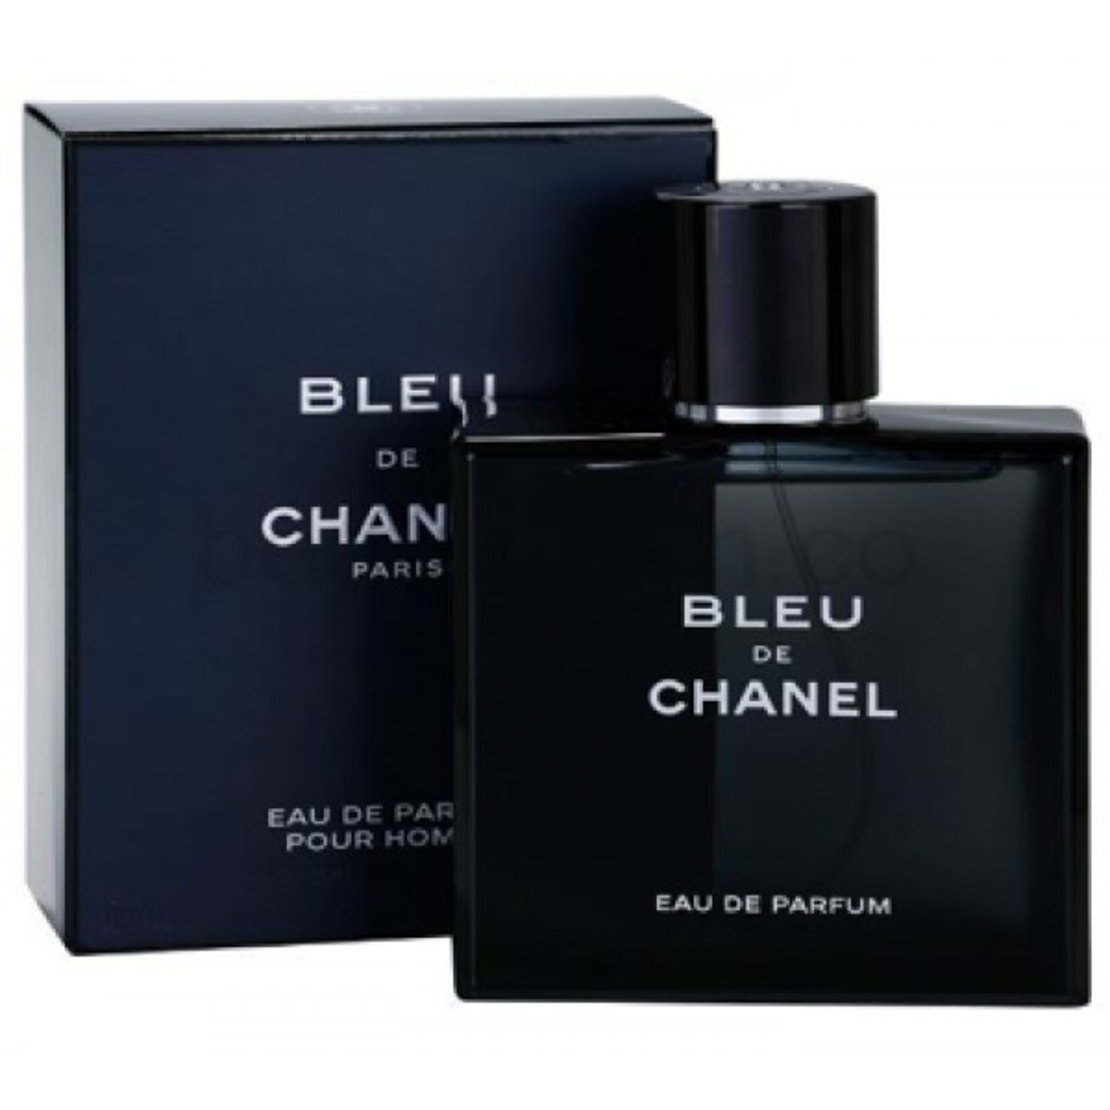 בושם לגבר שאנל בלו Chanel Bleu EDP 150 ML